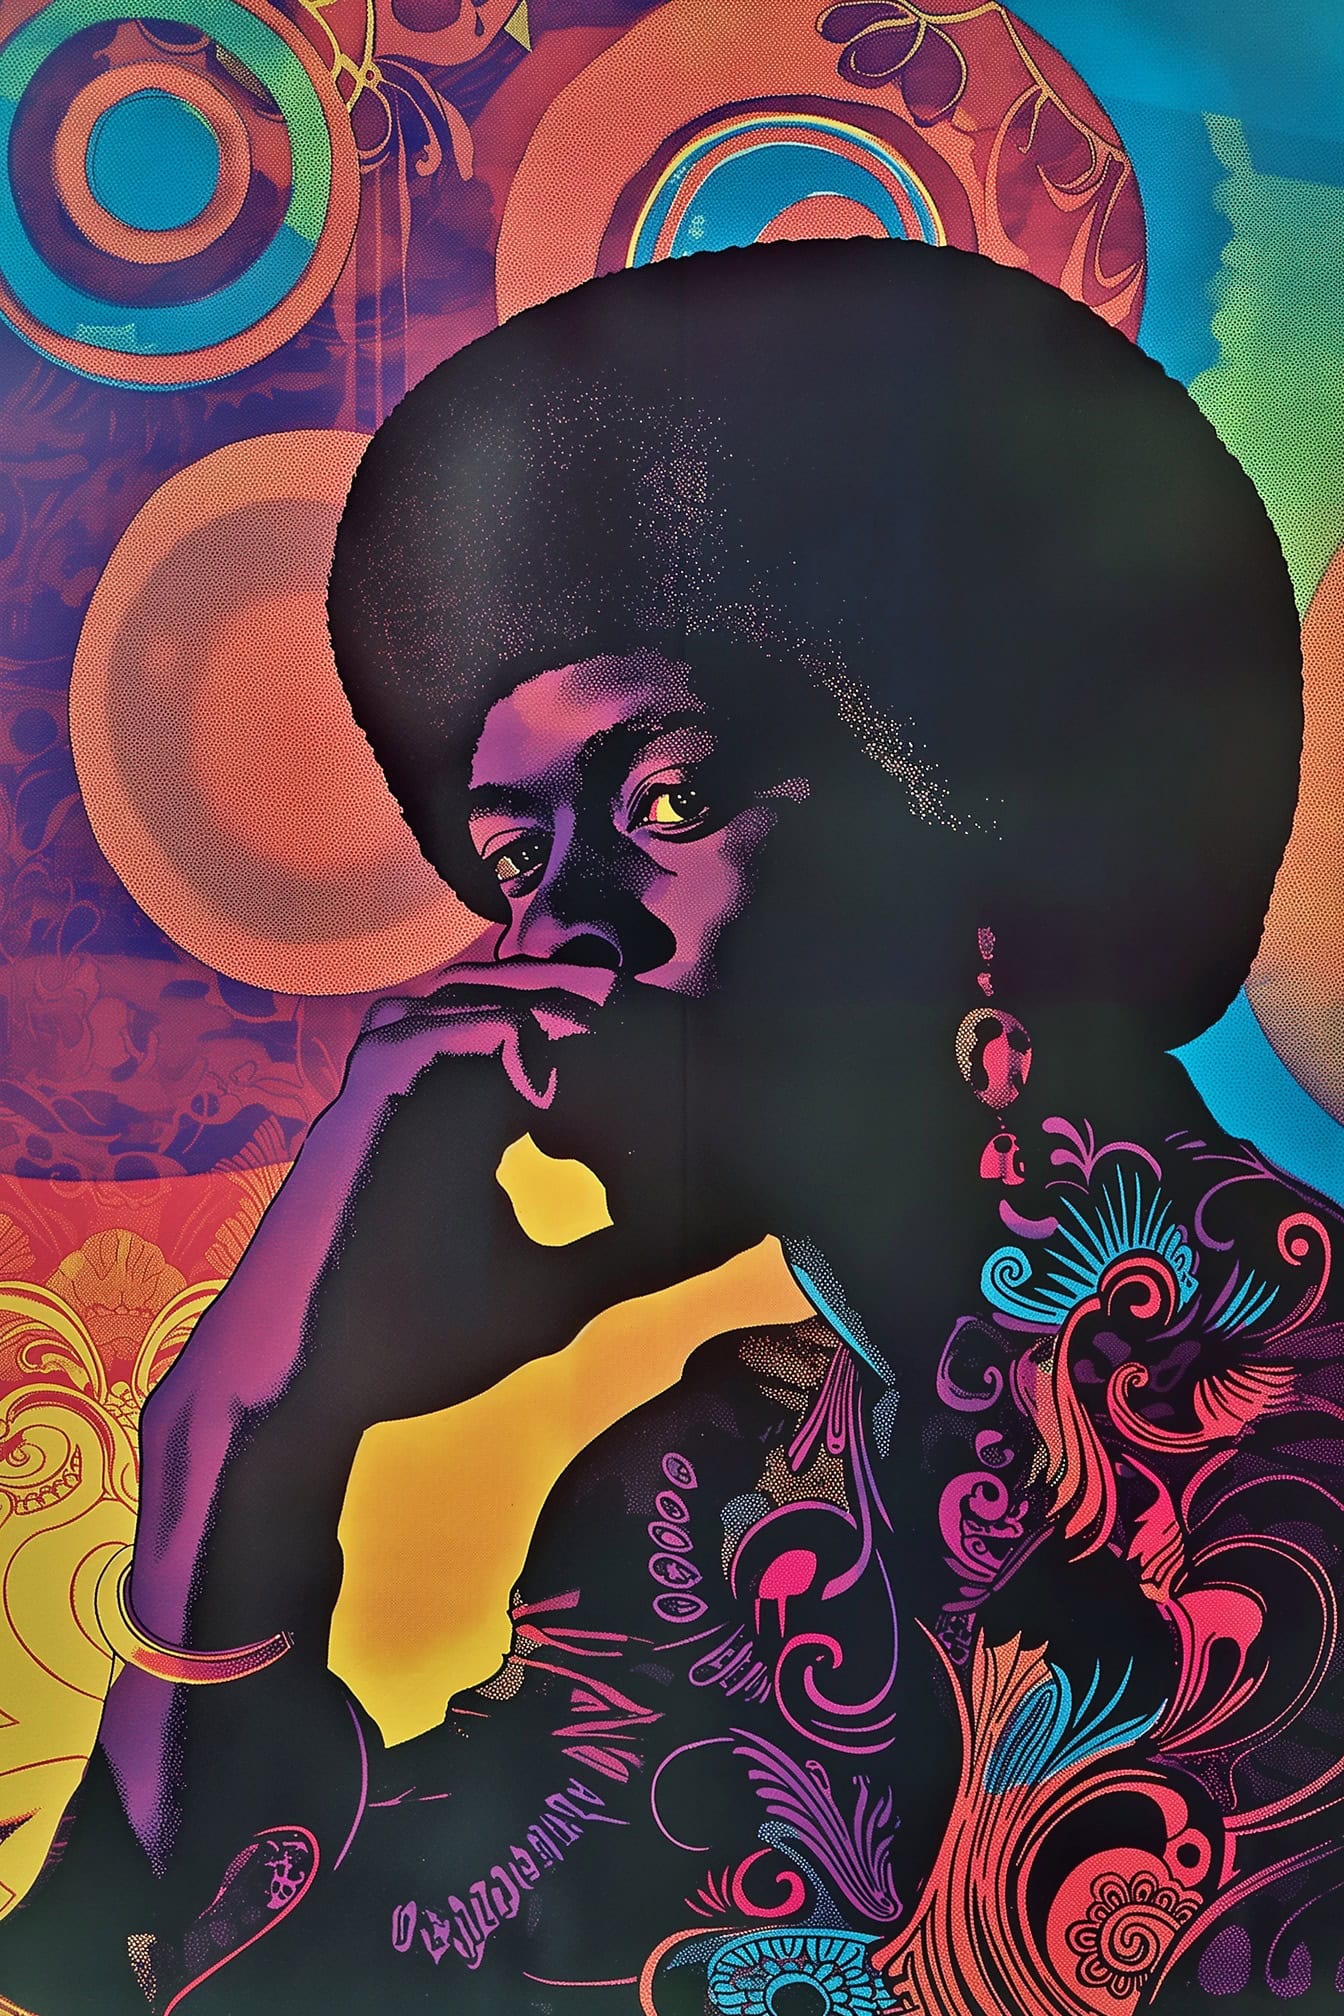 โปสเตอร์สไตล์ย้อนยุคของ Jimi Hendrix พร้อมทรงผมแอฟโฟรและมีพื้นหลังศิลปะที่มีสีสัน